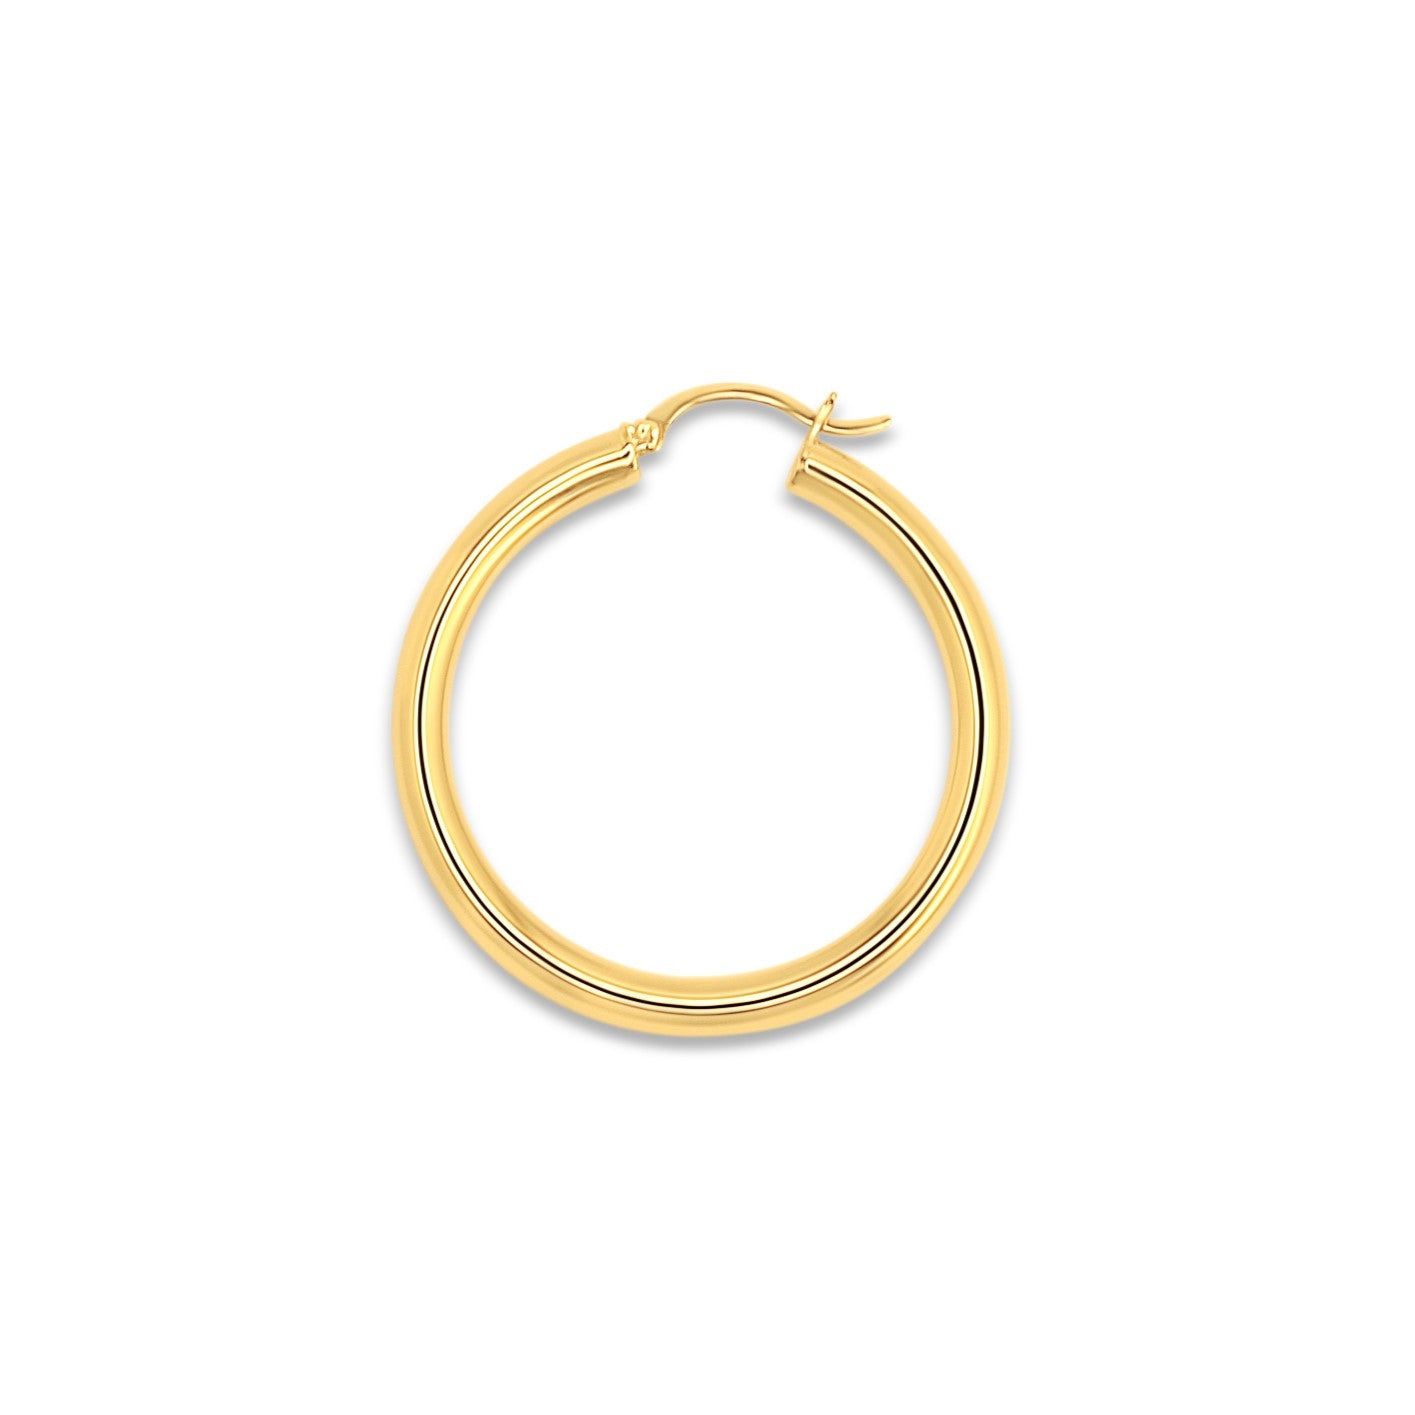 4 mm Everyday Gold Tube Hoop Earrings